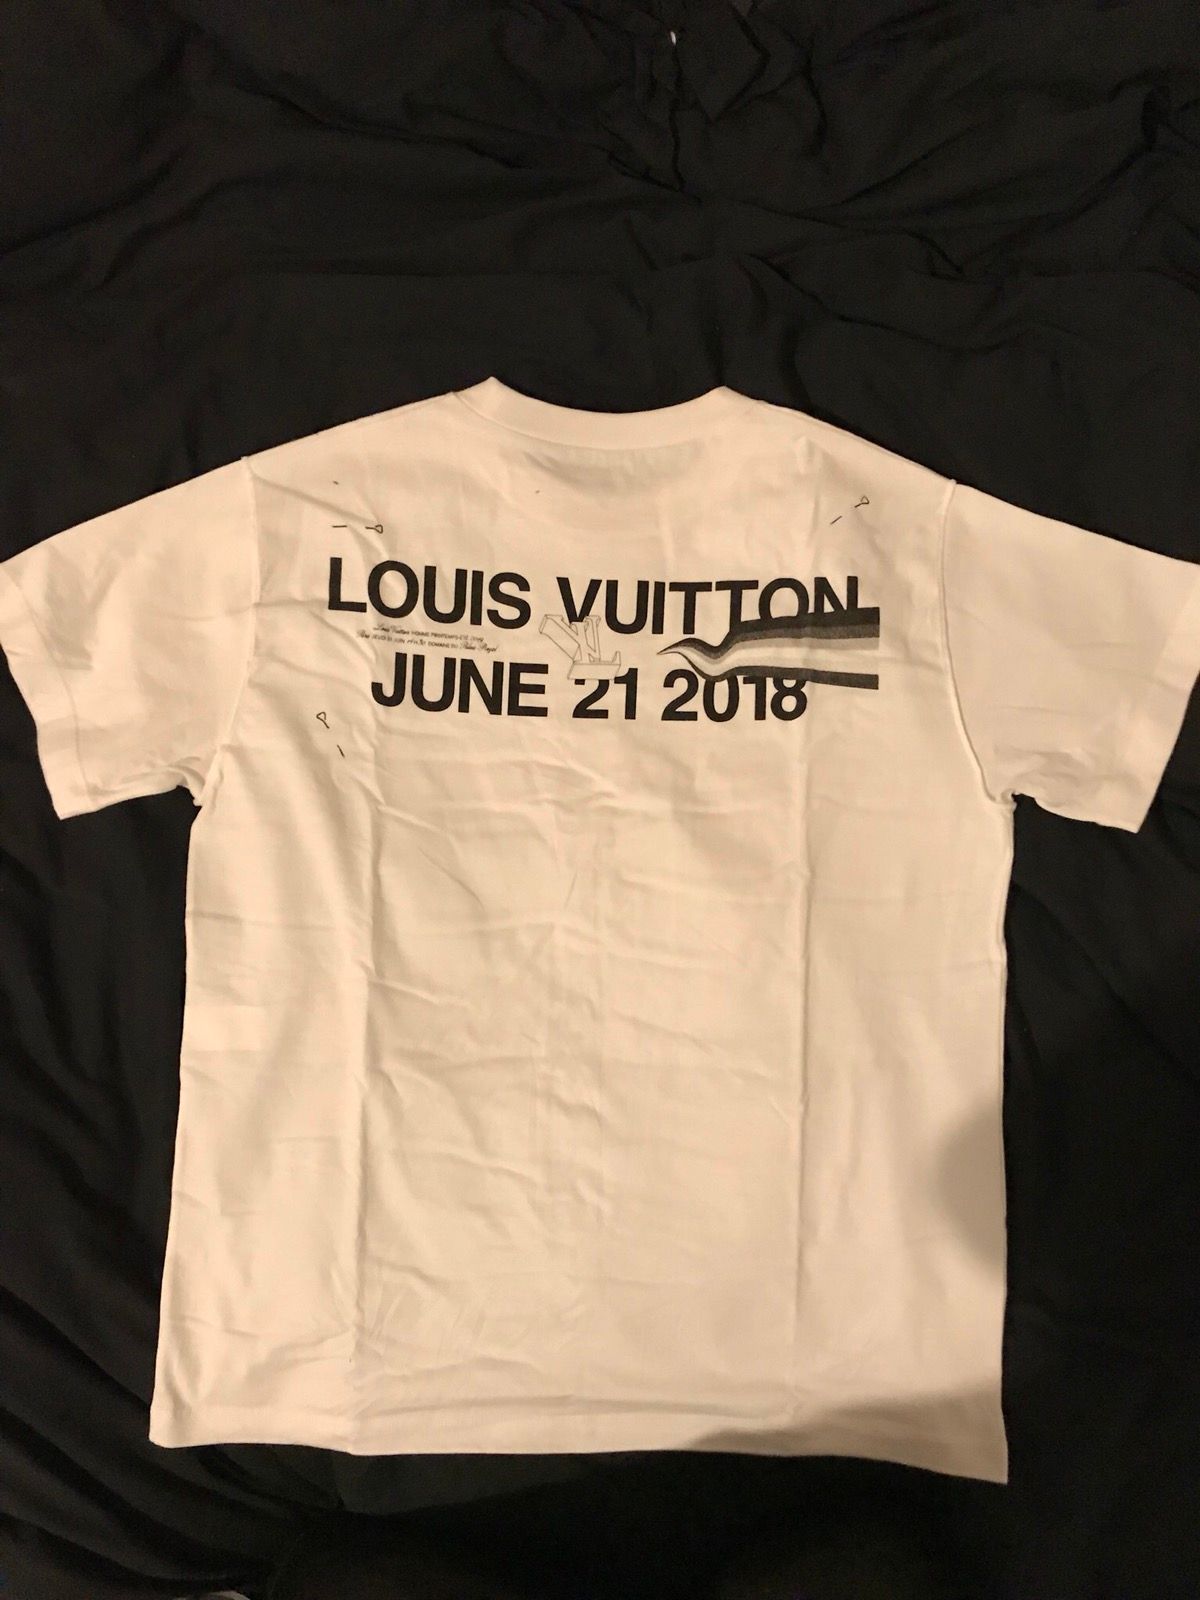 Louis Vuitton 100% Cotton T-shirt Blue by Virgil Abloh Size 4L